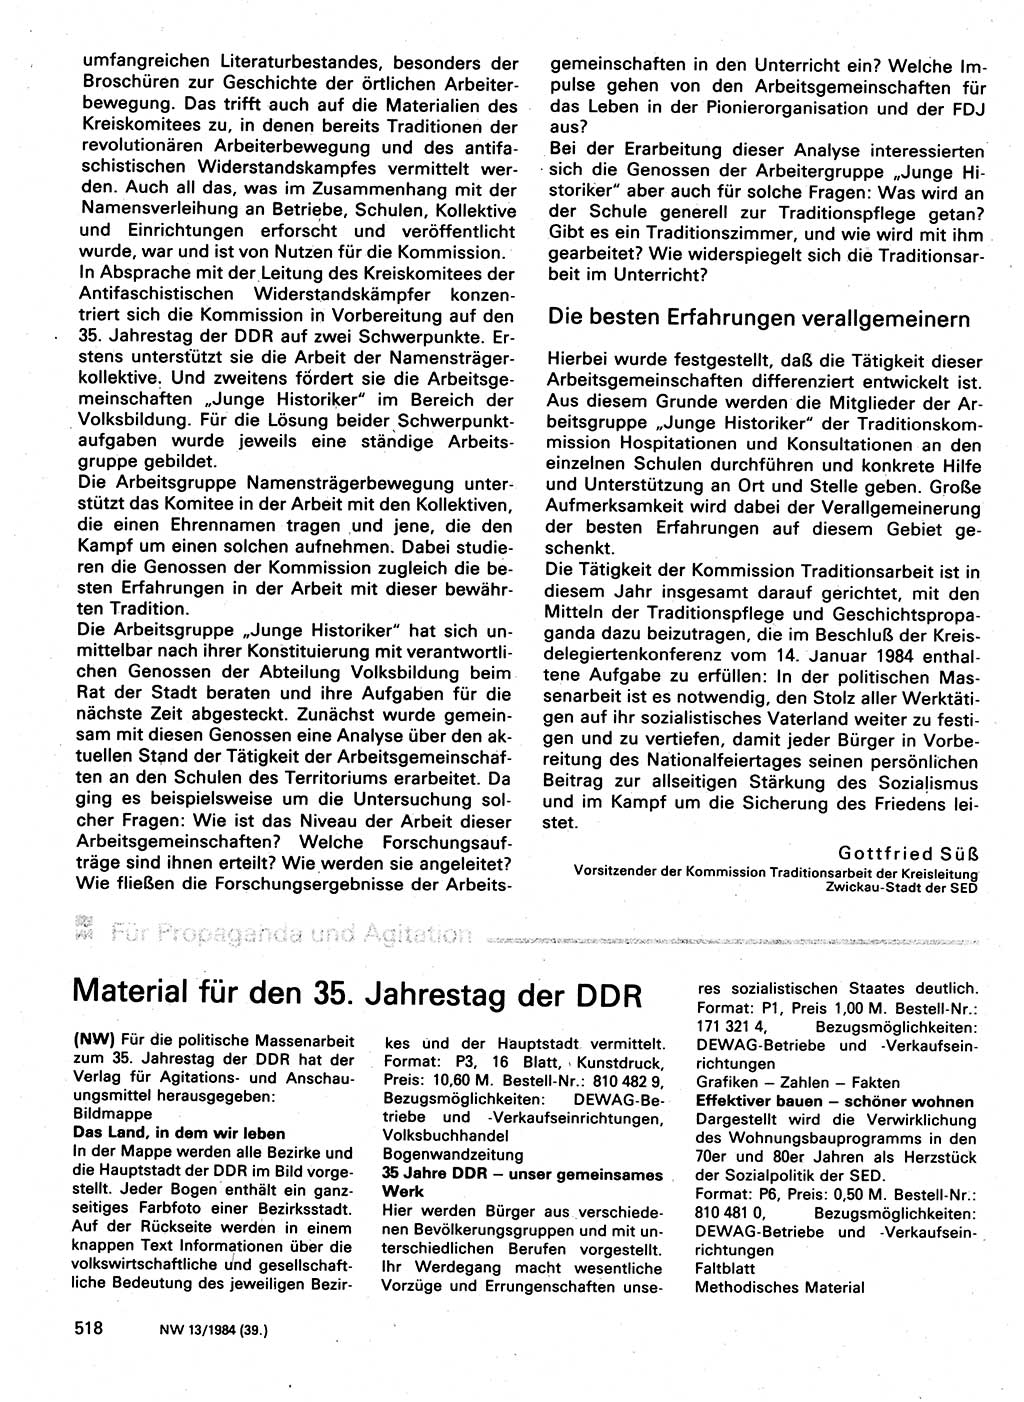 Neuer Weg (NW), Organ des Zentralkomitees (ZK) der SED (Sozialistische Einheitspartei Deutschlands) für Fragen des Parteilebens, 39. Jahrgang [Deutsche Demokratische Republik (DDR)] 1984, Seite 518 (NW ZK SED DDR 1984, S. 518)